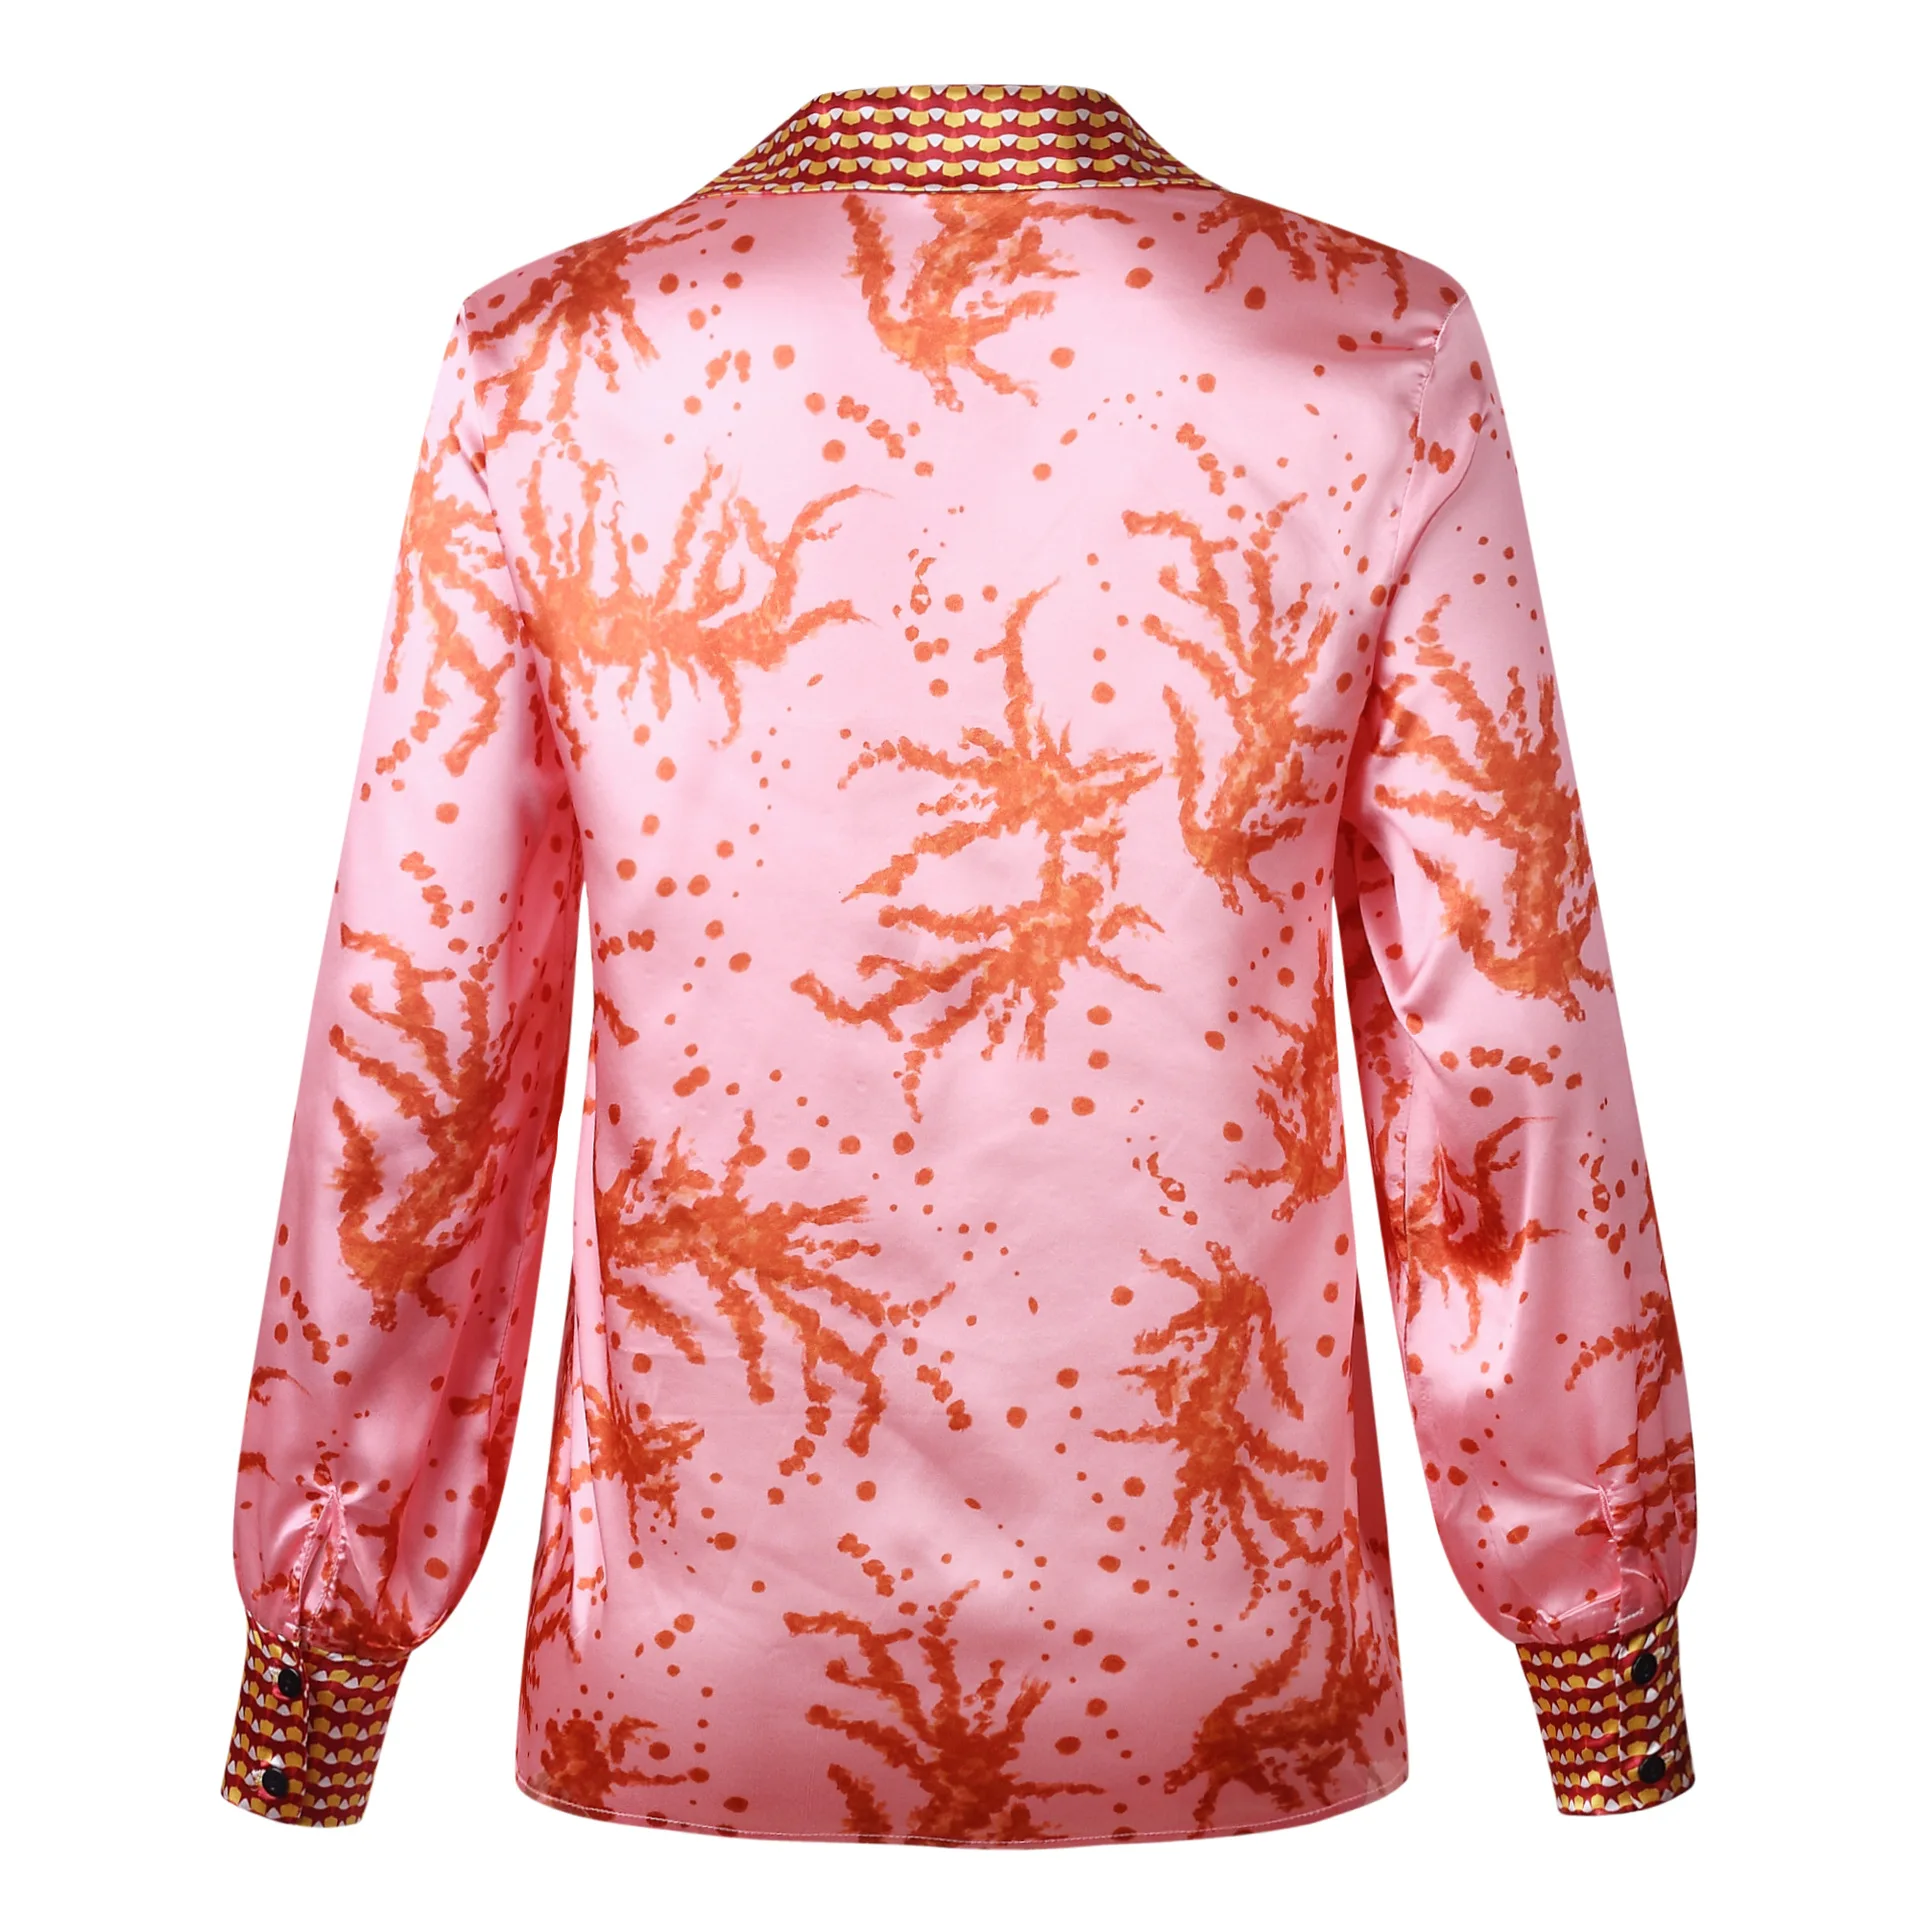 Nadafair Цветочная винтажная атласная блузка для женщин осенние повседневные топы с длинным рукавом Элегантного размера плюс офисные шелковые блузки рубашки